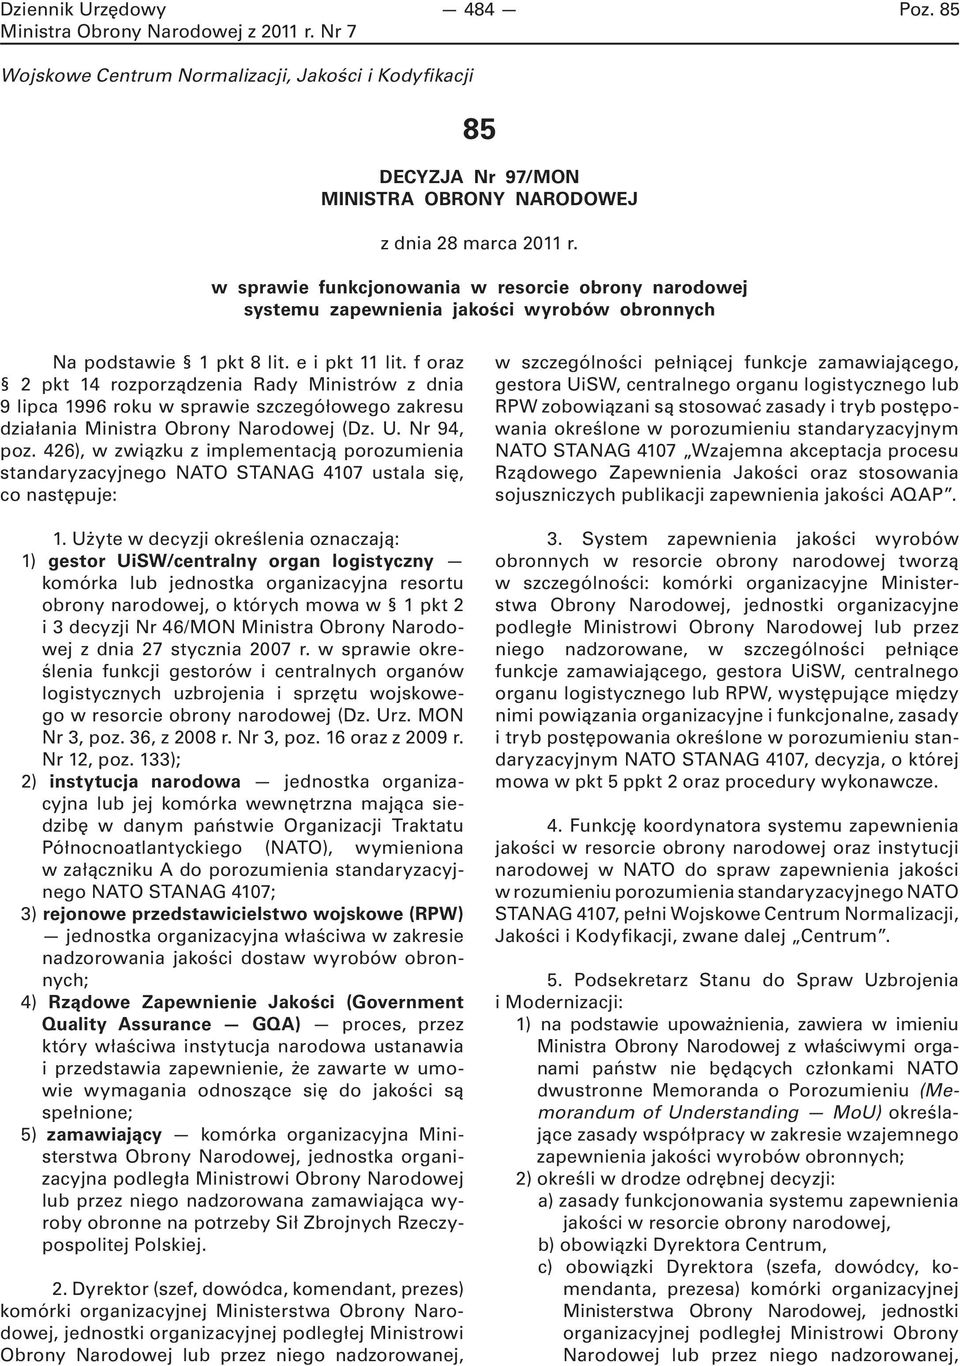 f oraz 2 pkt 14 rozporządzenia Rady Ministrów z dnia 9 lipca 1996 roku w sprawie szczegółowego zakresu działania Ministra Obrony Narodowej (Dz. U. Nr 94, poz.